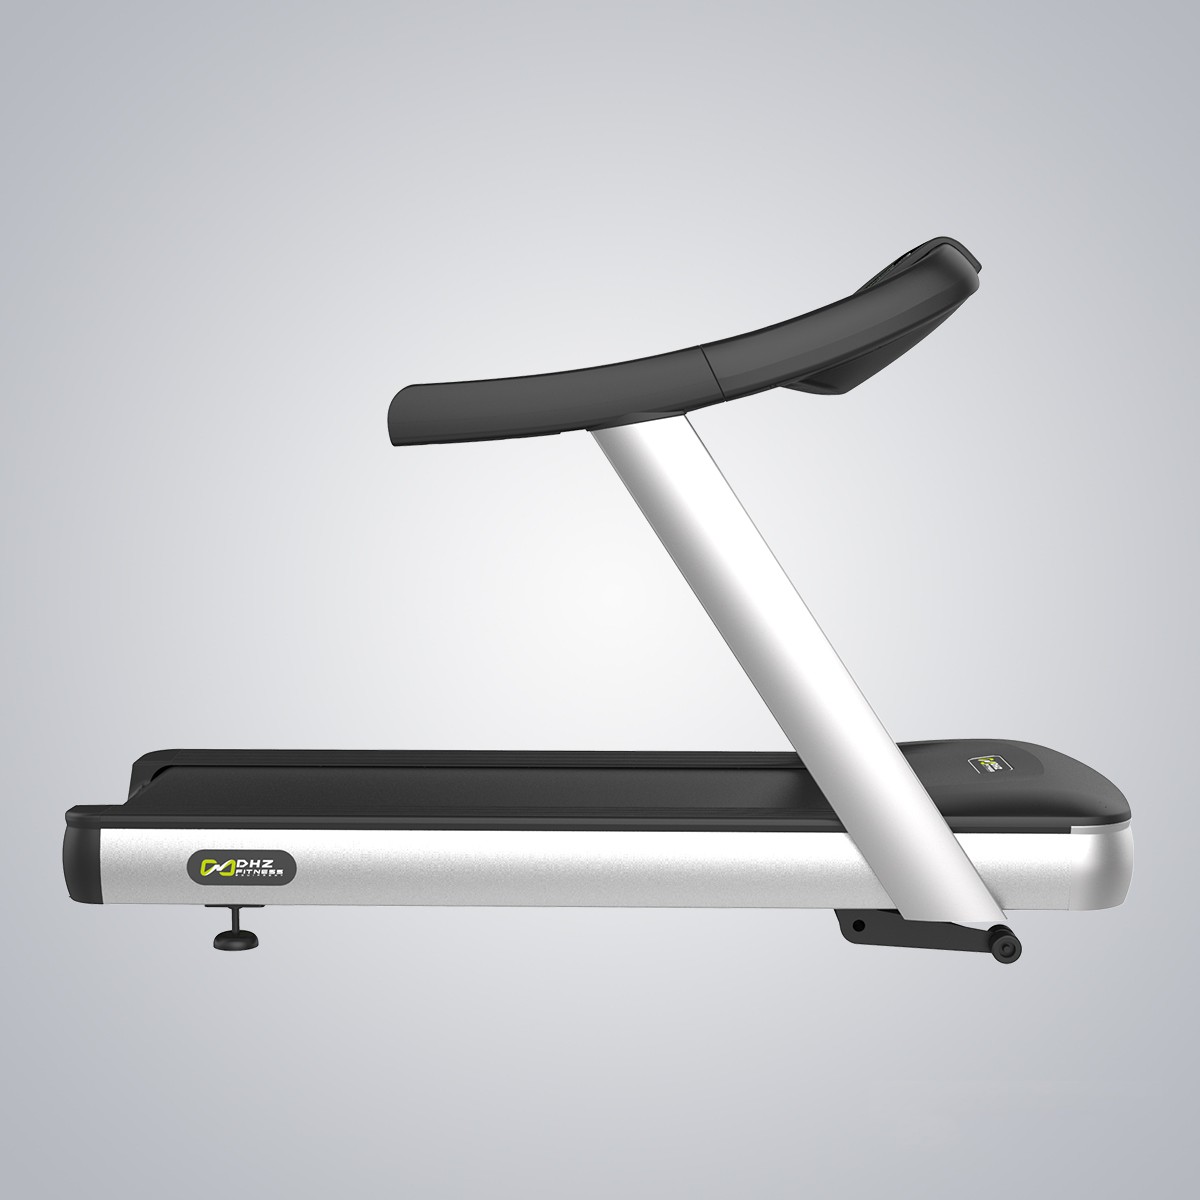 Treadmill X8200A